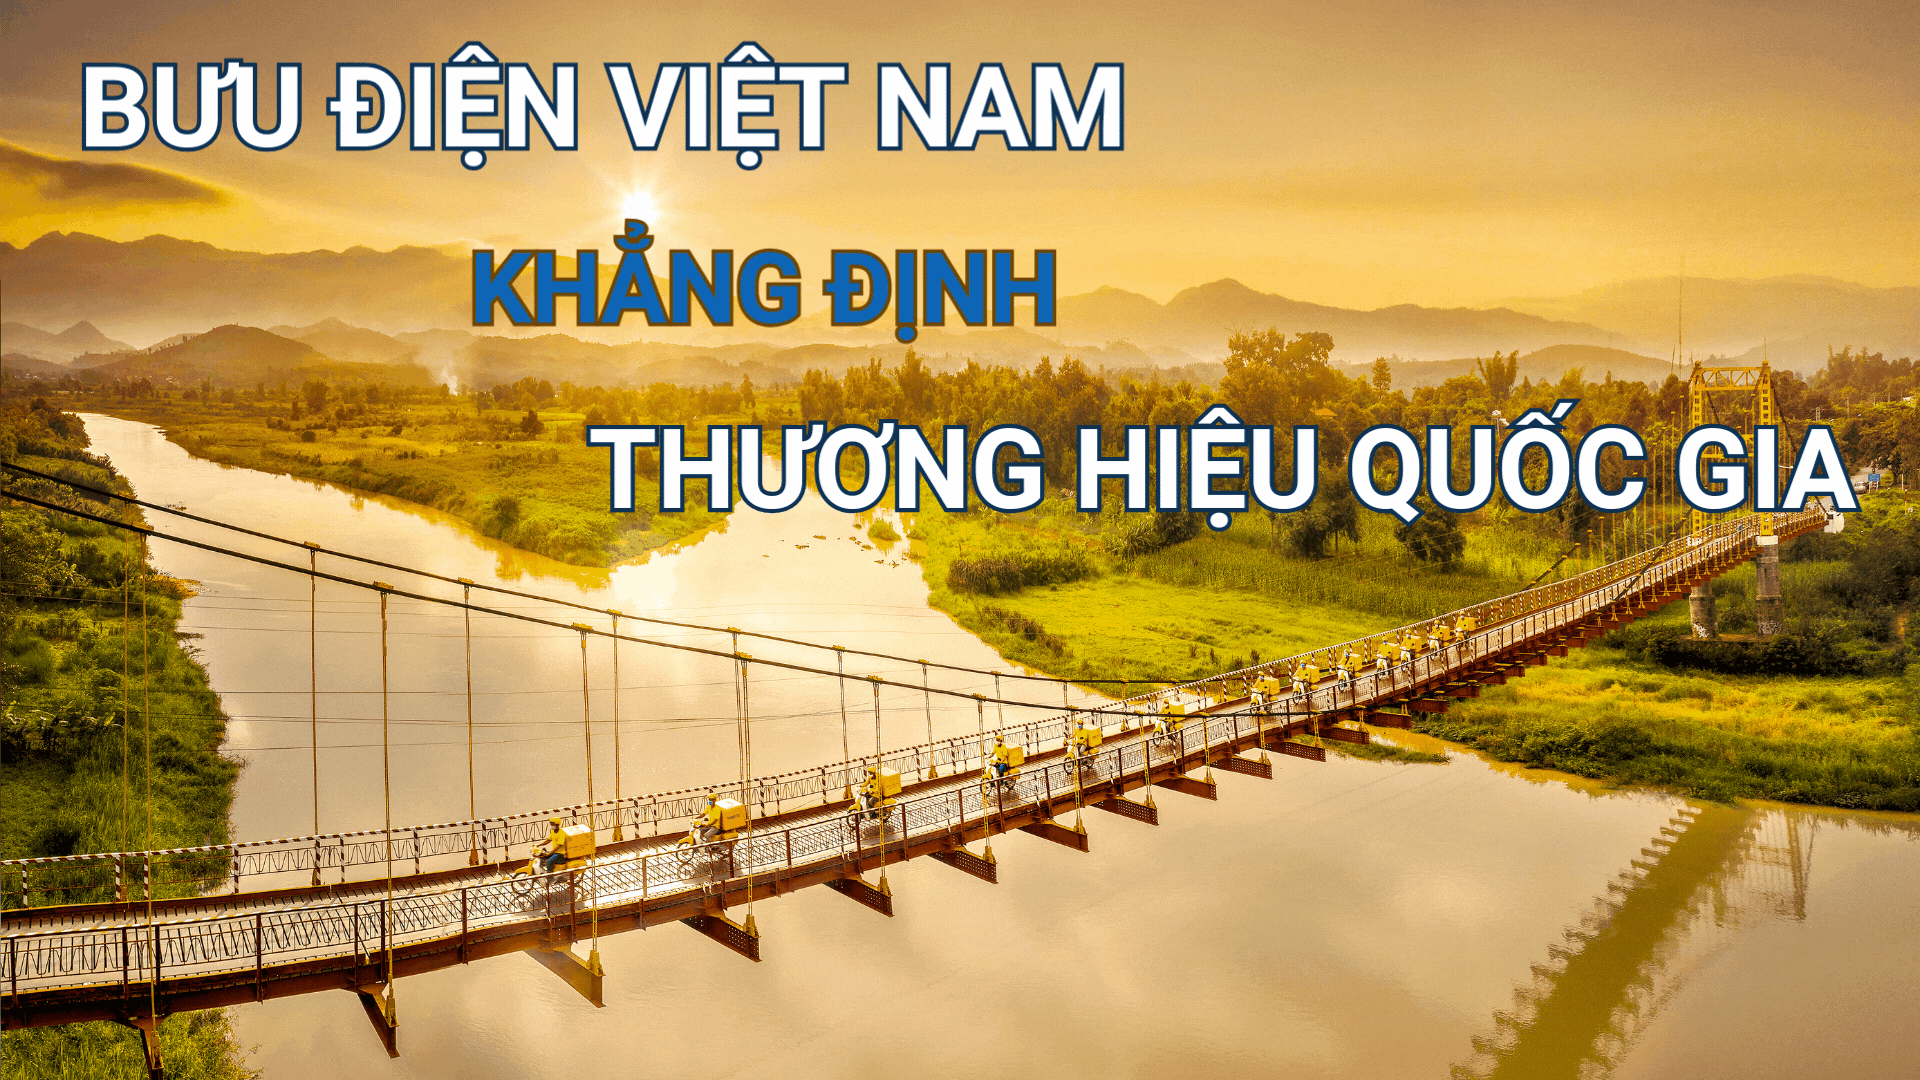  Bưu điện Việt Nam - Khẳng định Thương hiệu quốc gia